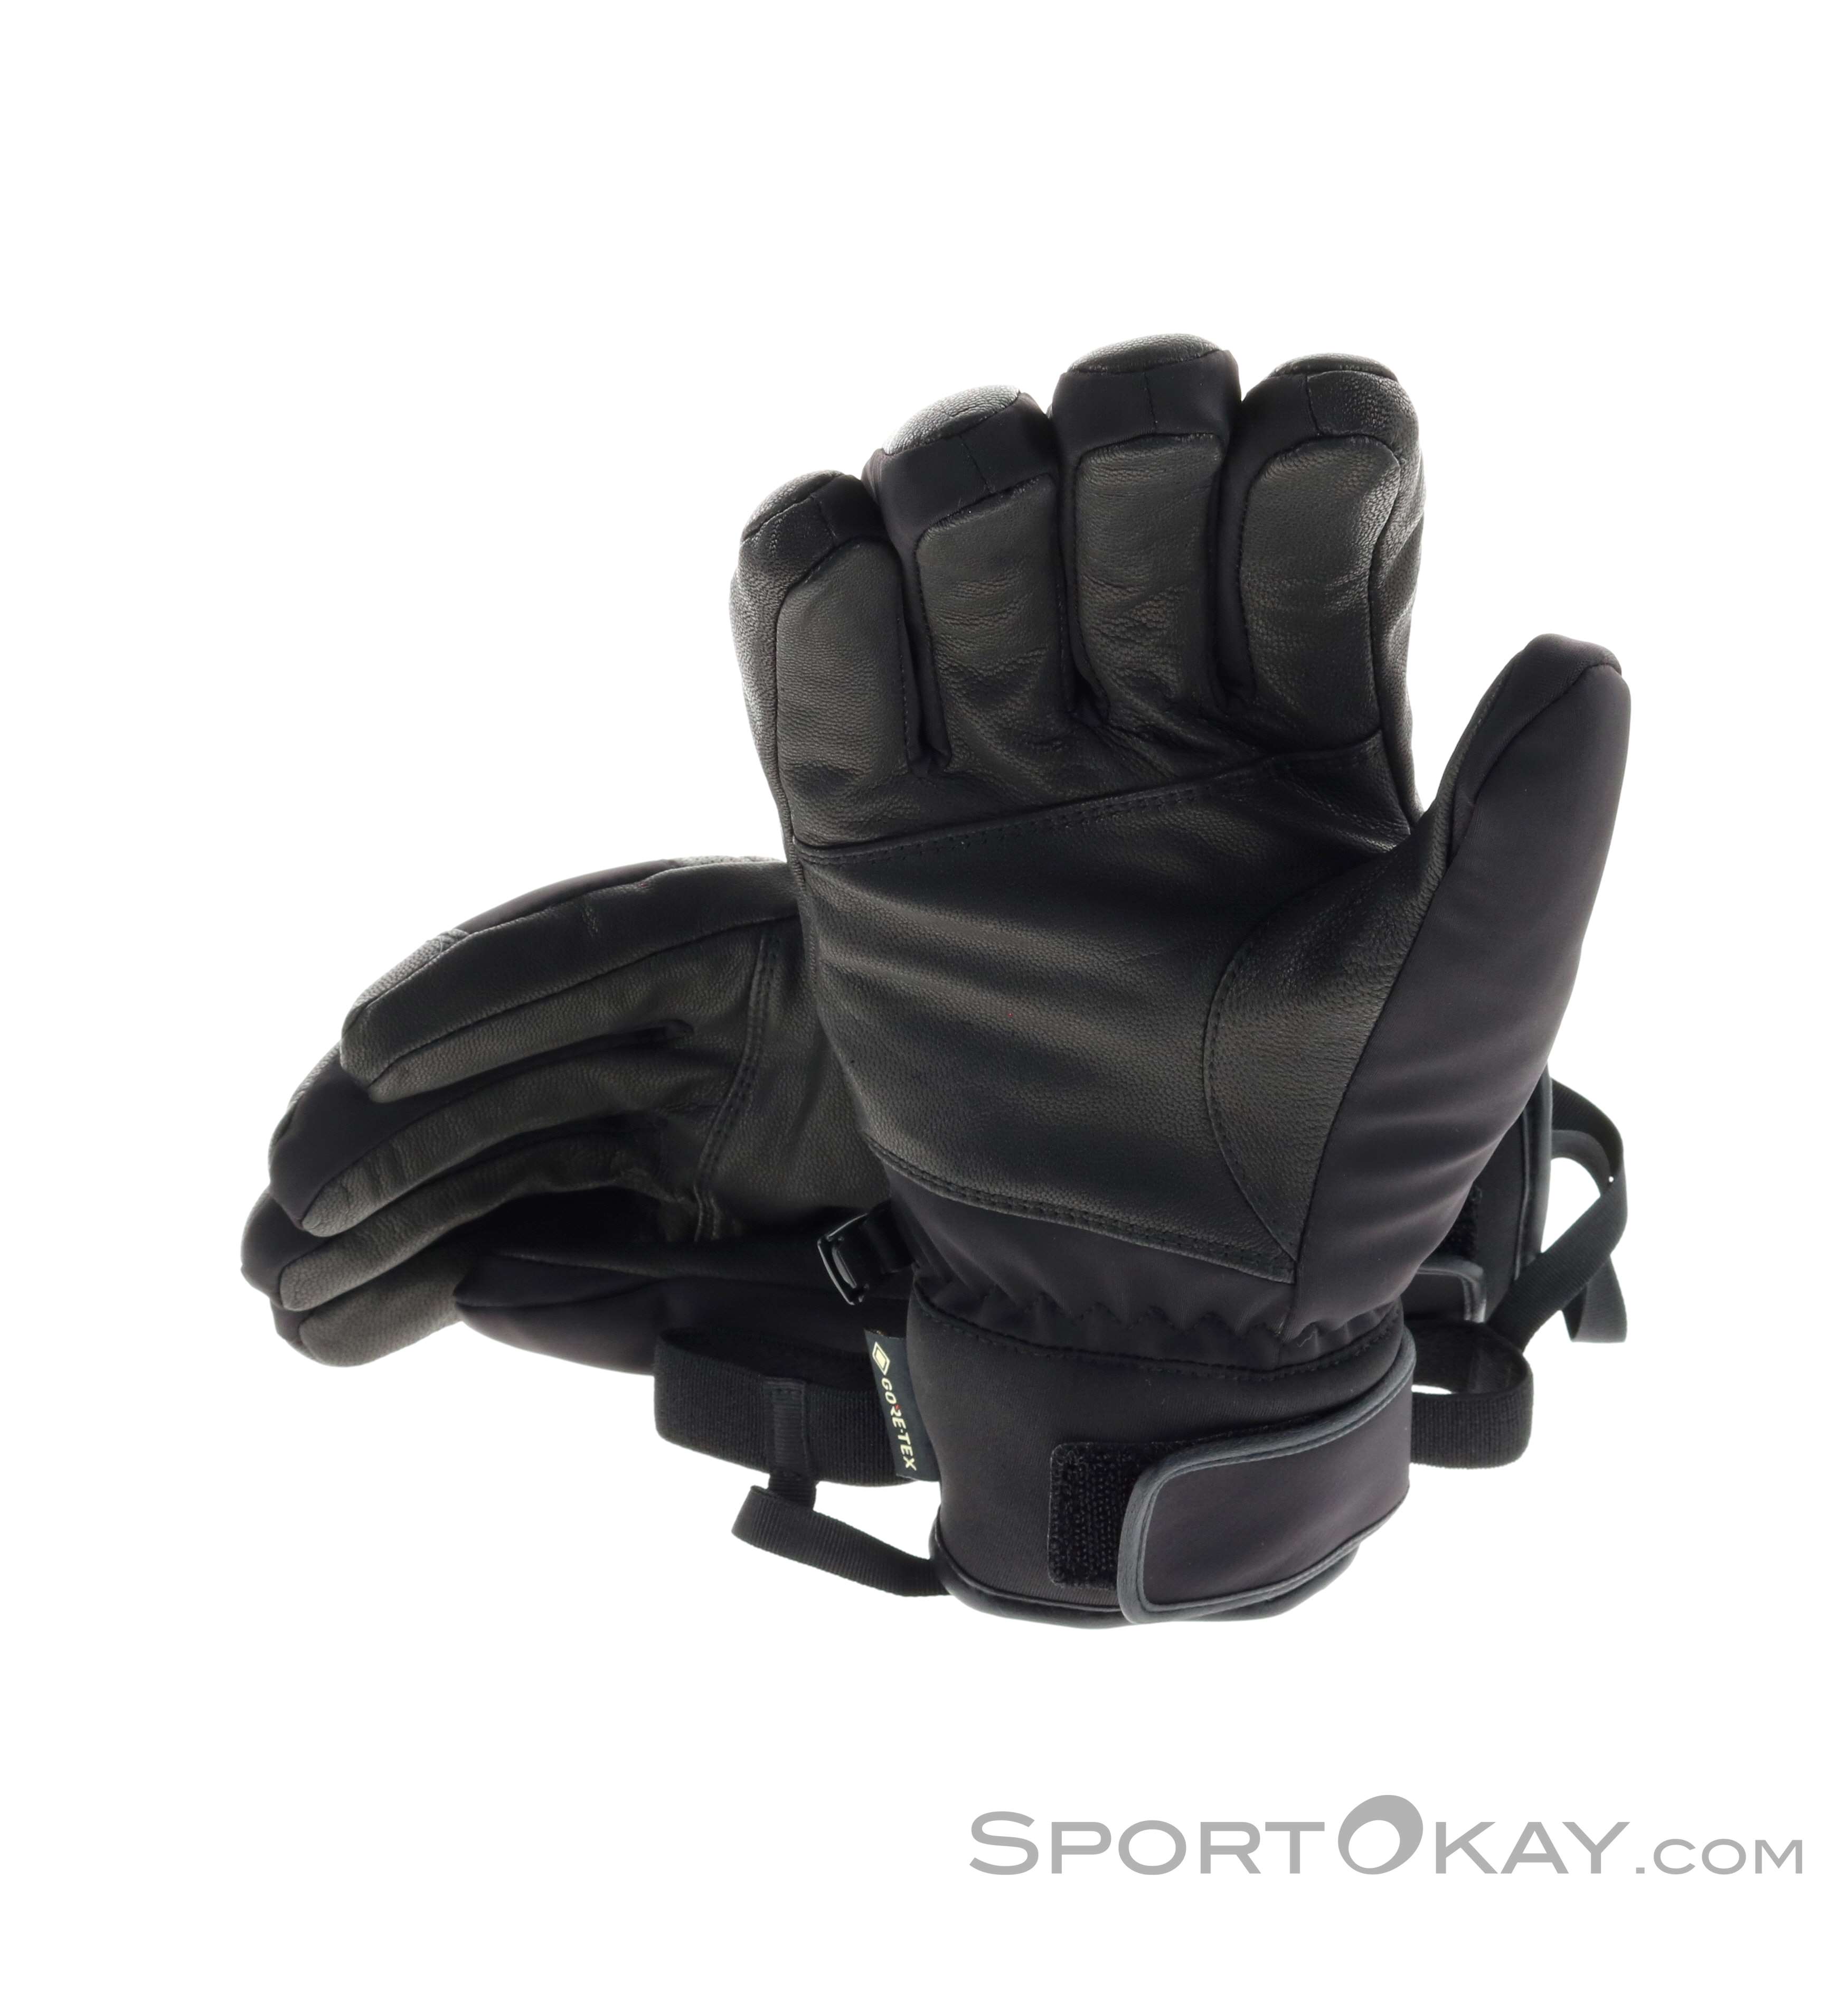 Gore-Tex Outdoor Handschuhe Alle Reusch Handschuhe - - Outdoorbekleidung Jupiter GTX - -